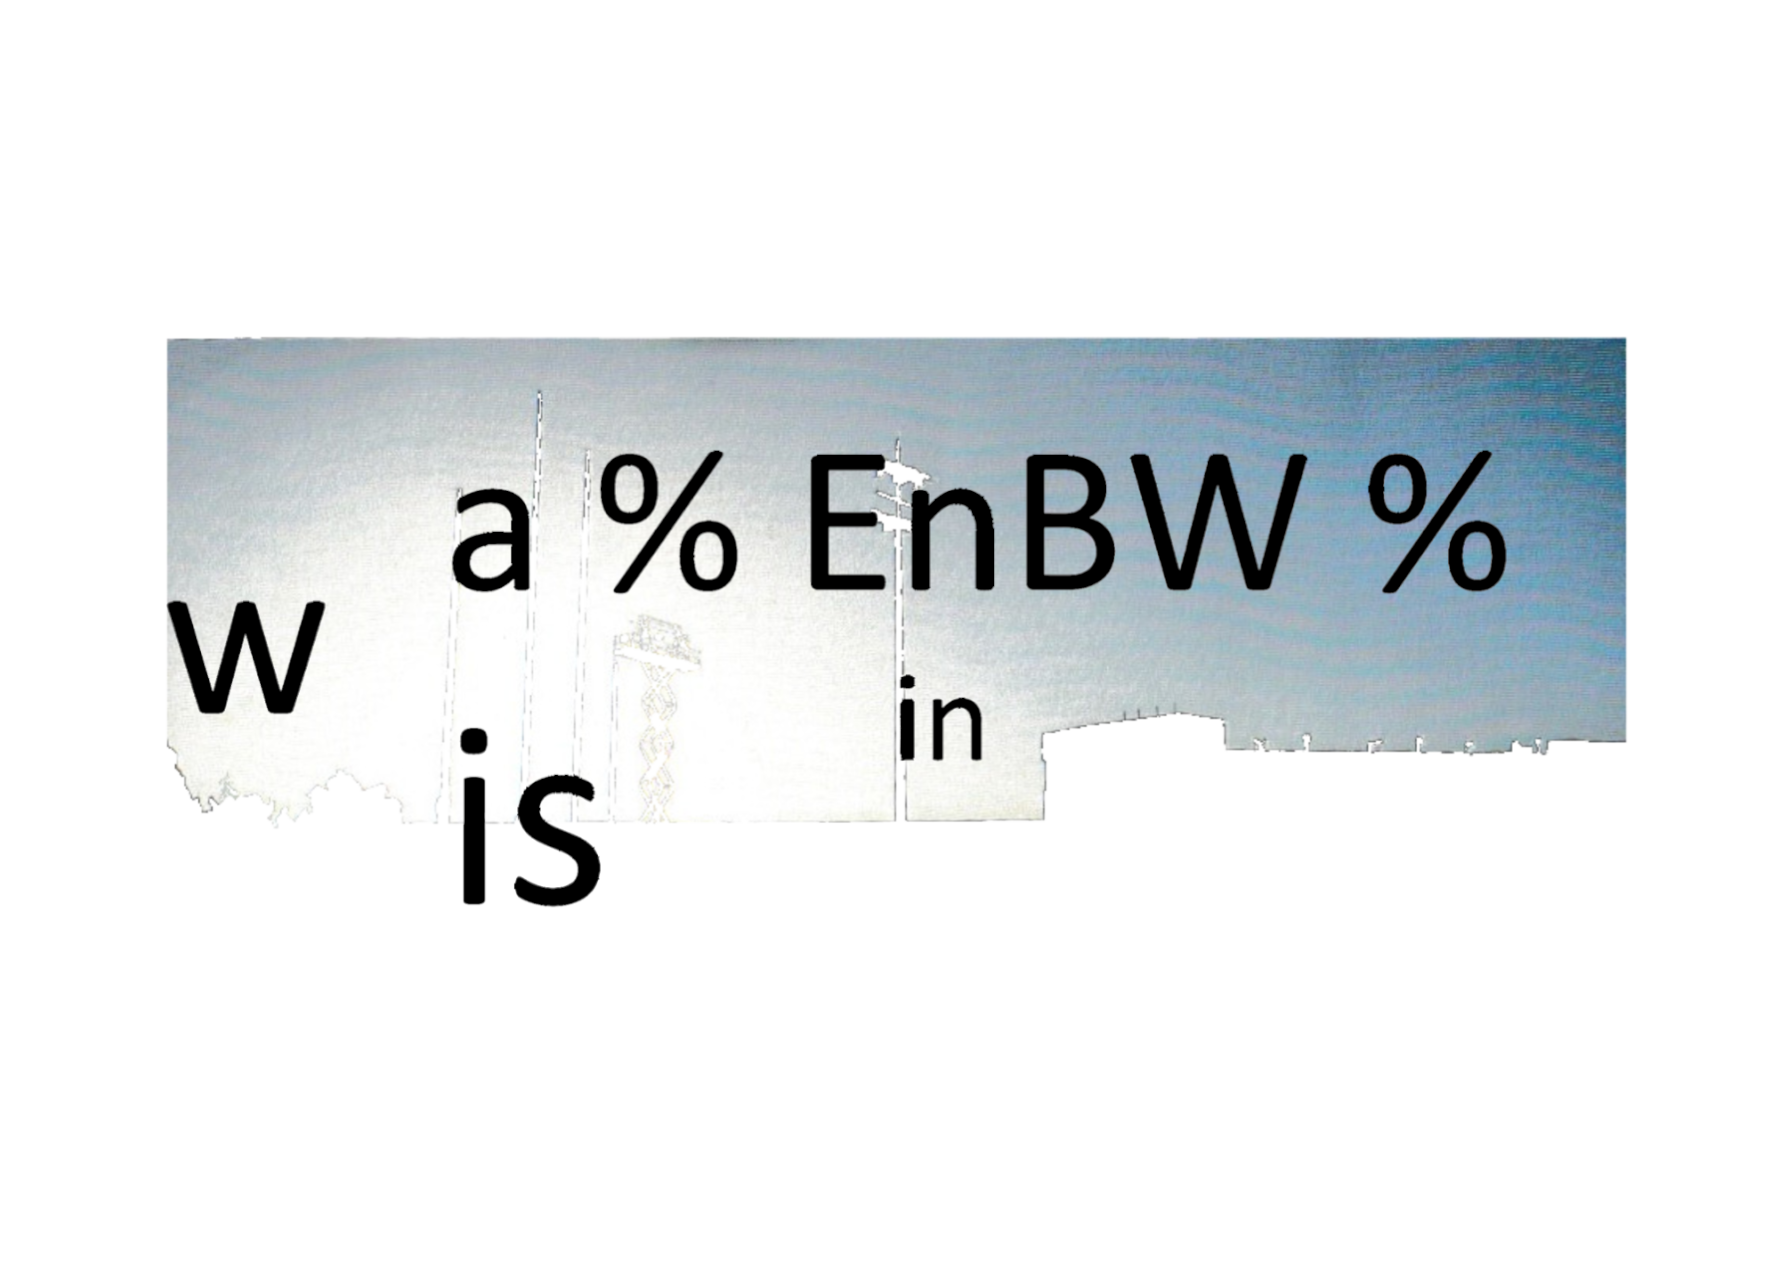 w a % EnBW % is in